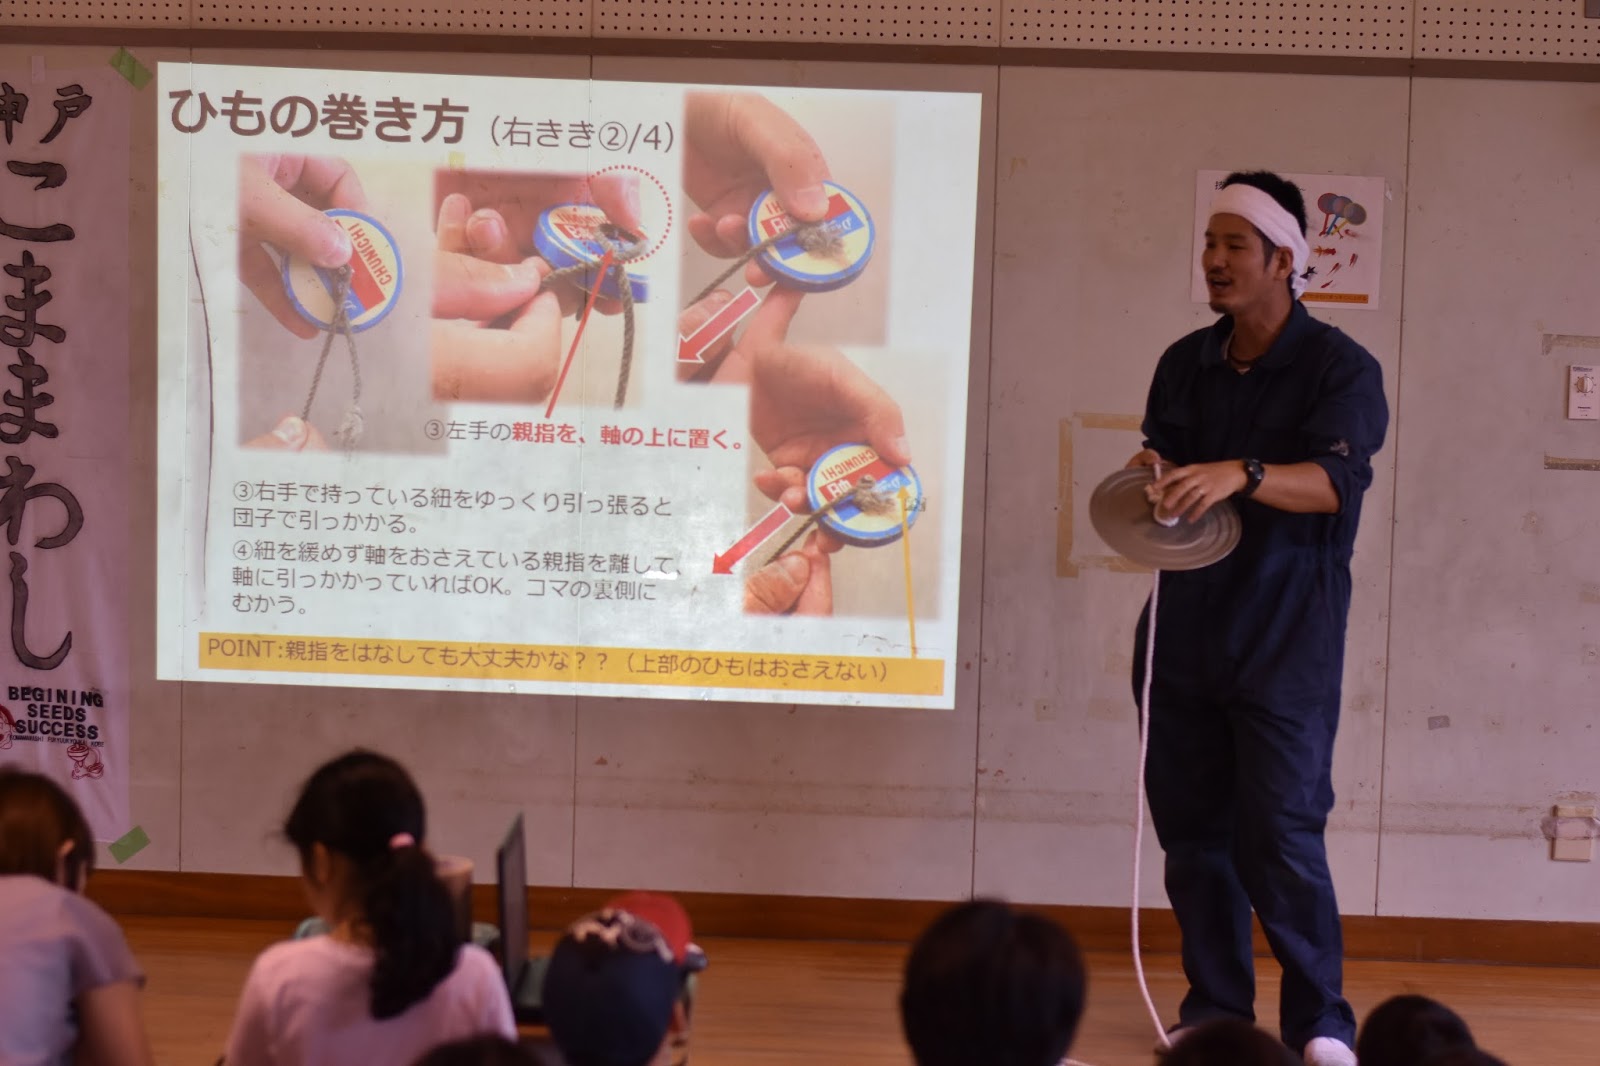 太山寺児童館最新情報 日曜開放行事 目指せコマの達人 を開催しました